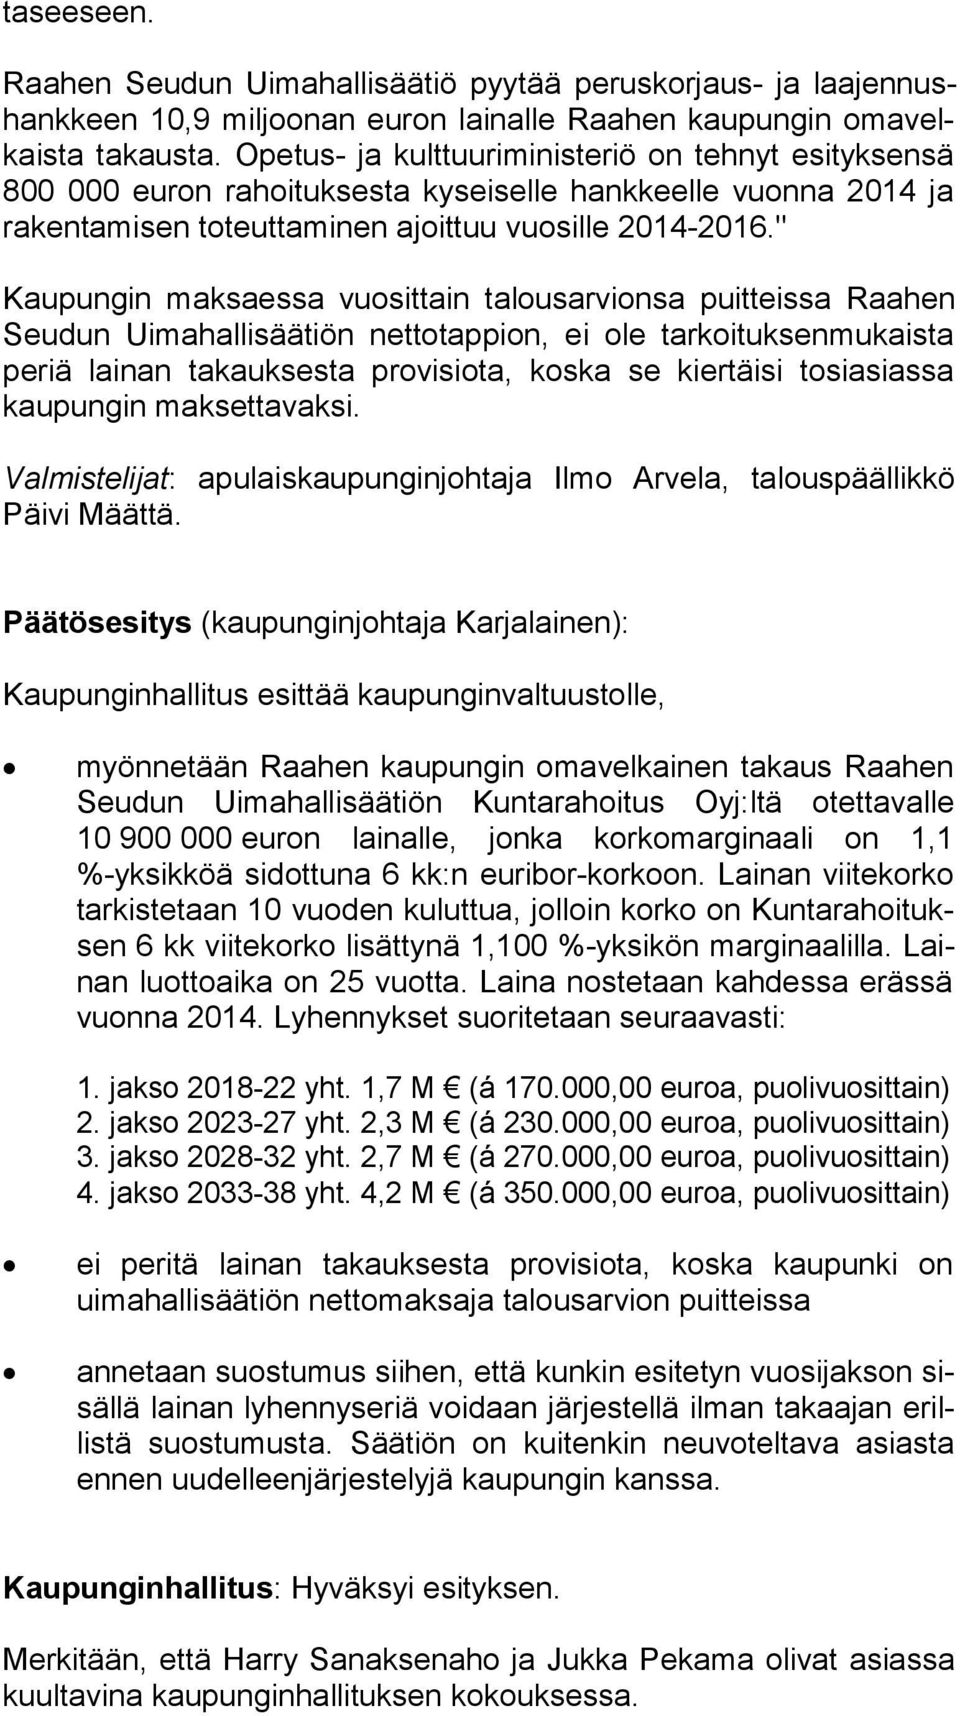 " Kaupungin maksaessa vuosittain talousarvionsa puitteissa Raahen Seudun Uimahallisäätiön nettotappion, ei ole tarkoituksenmukaista periä lainan takauksesta provisiota, koska se kiertäisi tosiasiassa